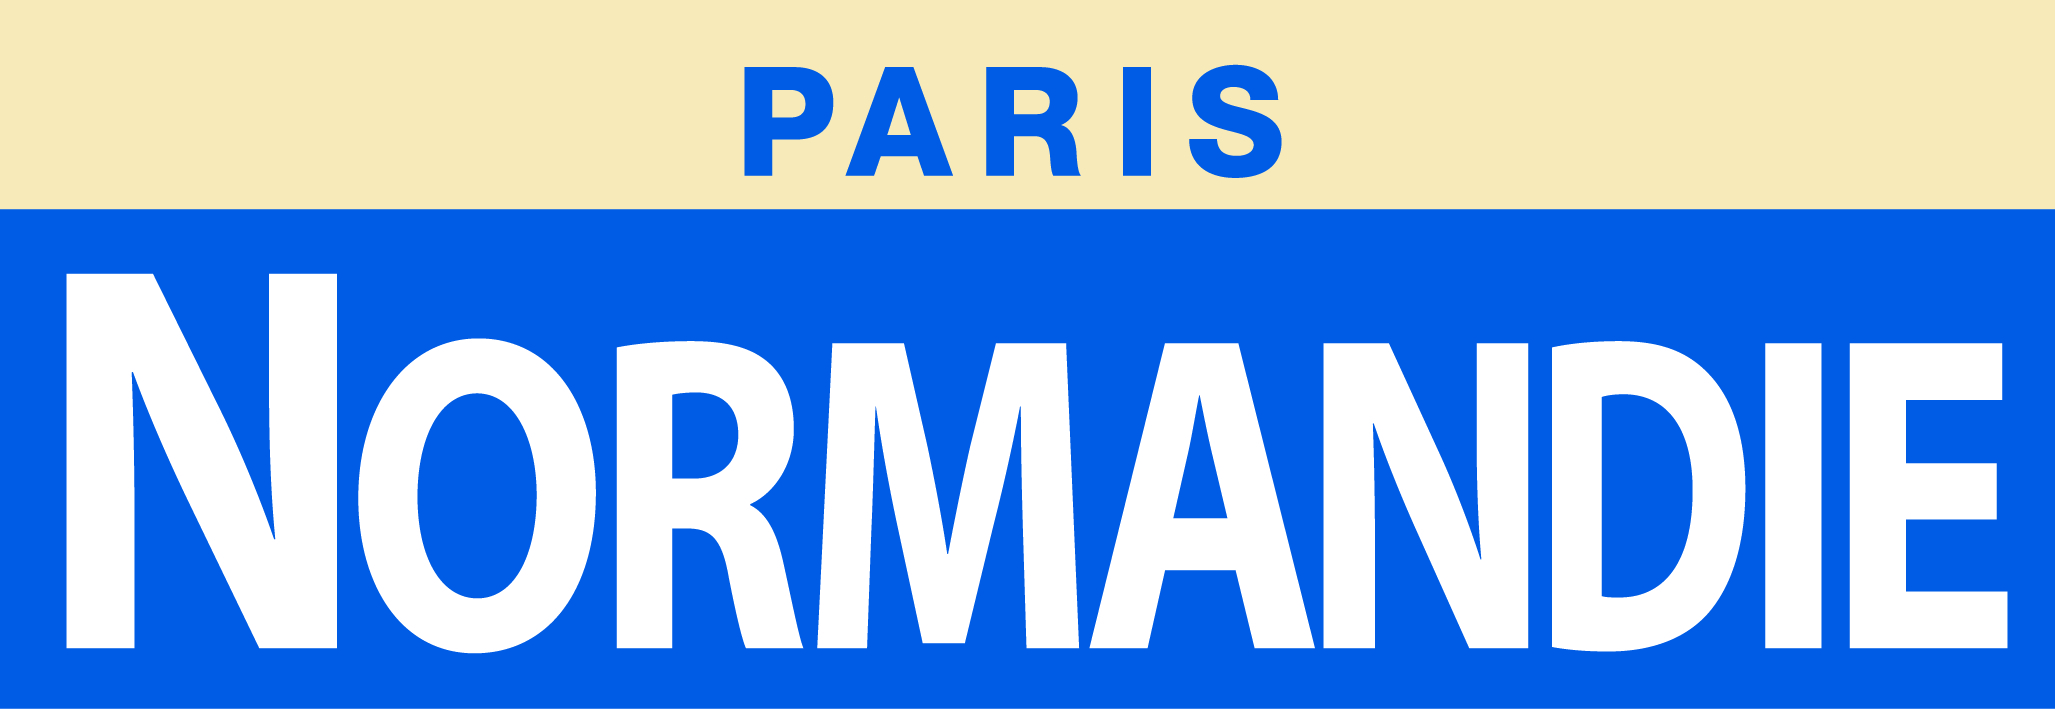 Logo-paris-Normandie